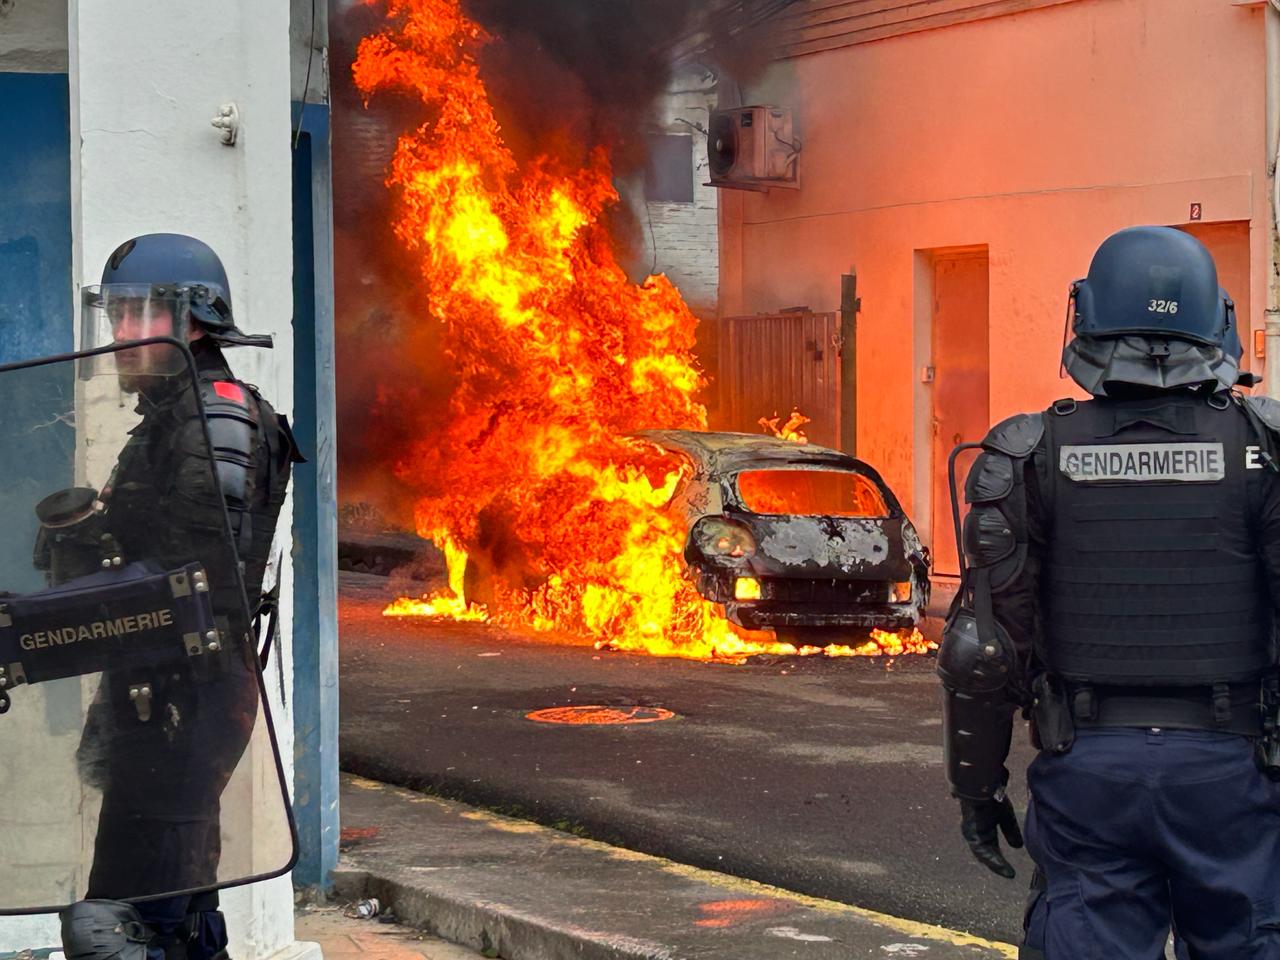     Hervé Pinto incarcéré : plusieurs incendies et des affrontements à Fort-de-France

